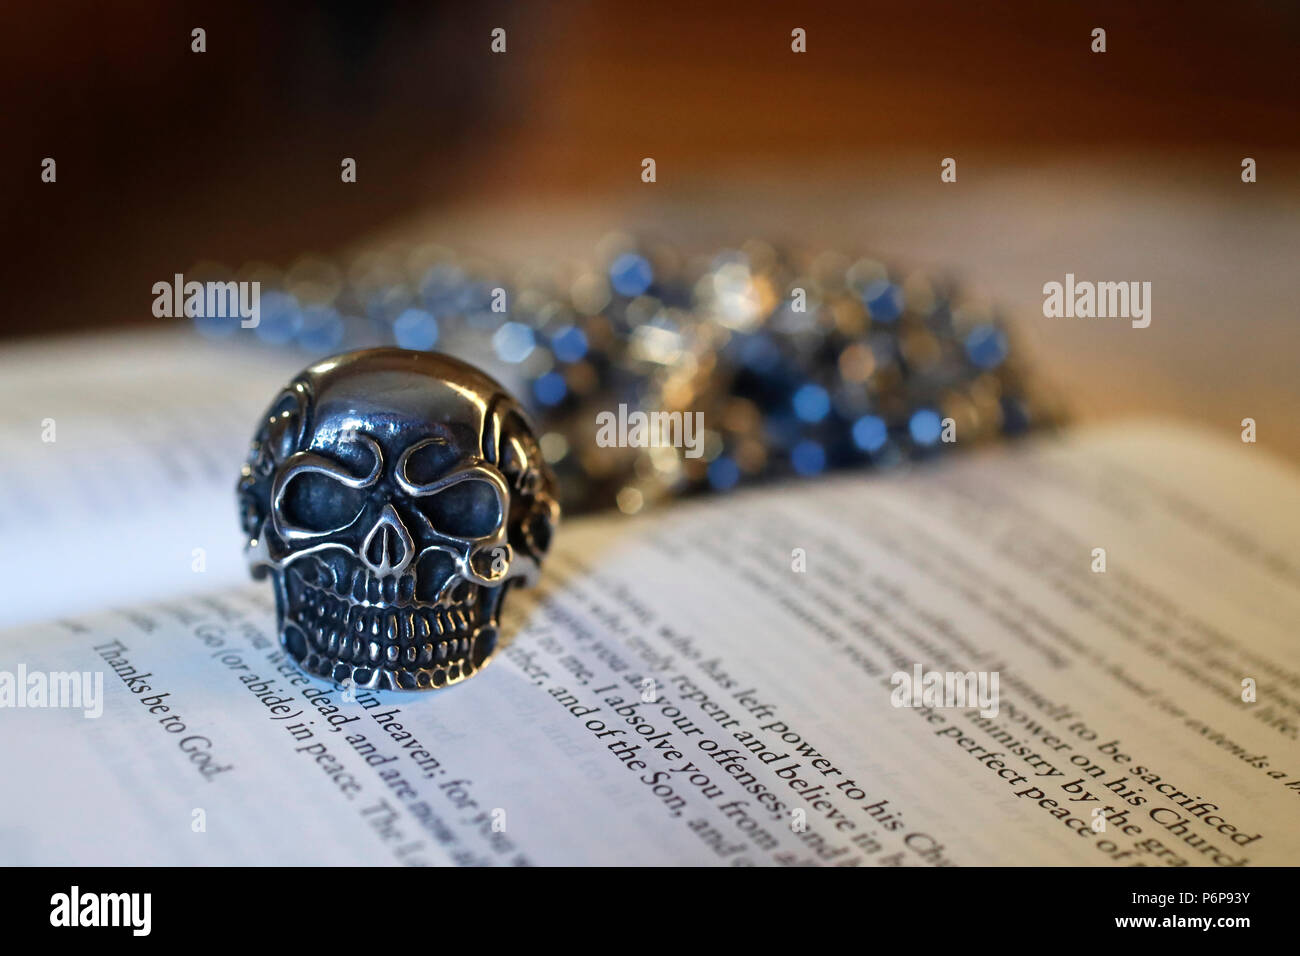 Cranio anello su una bibbia. Close-up. La Francia. Foto Stock